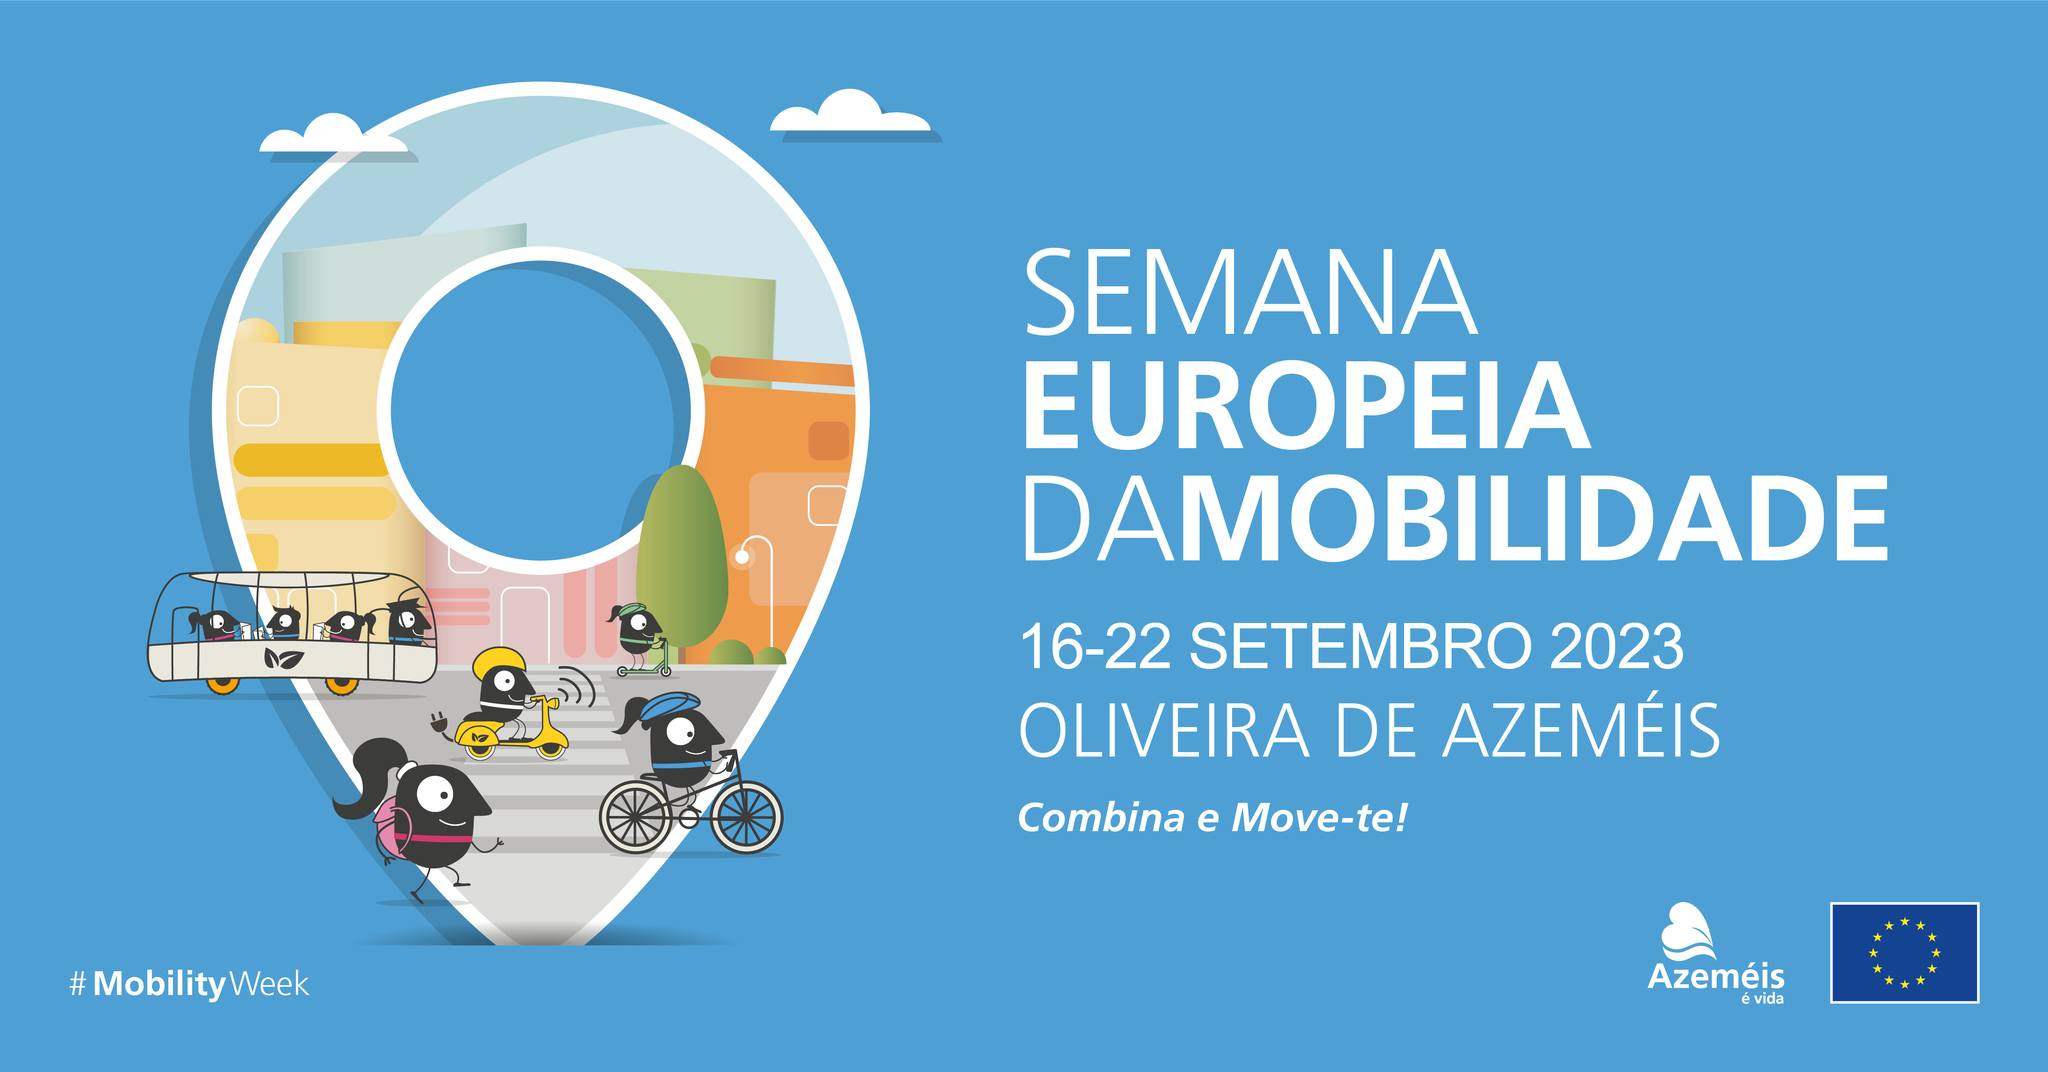 Semana Europeia da Mobilidade 2023 | Oliveira de Azeméis